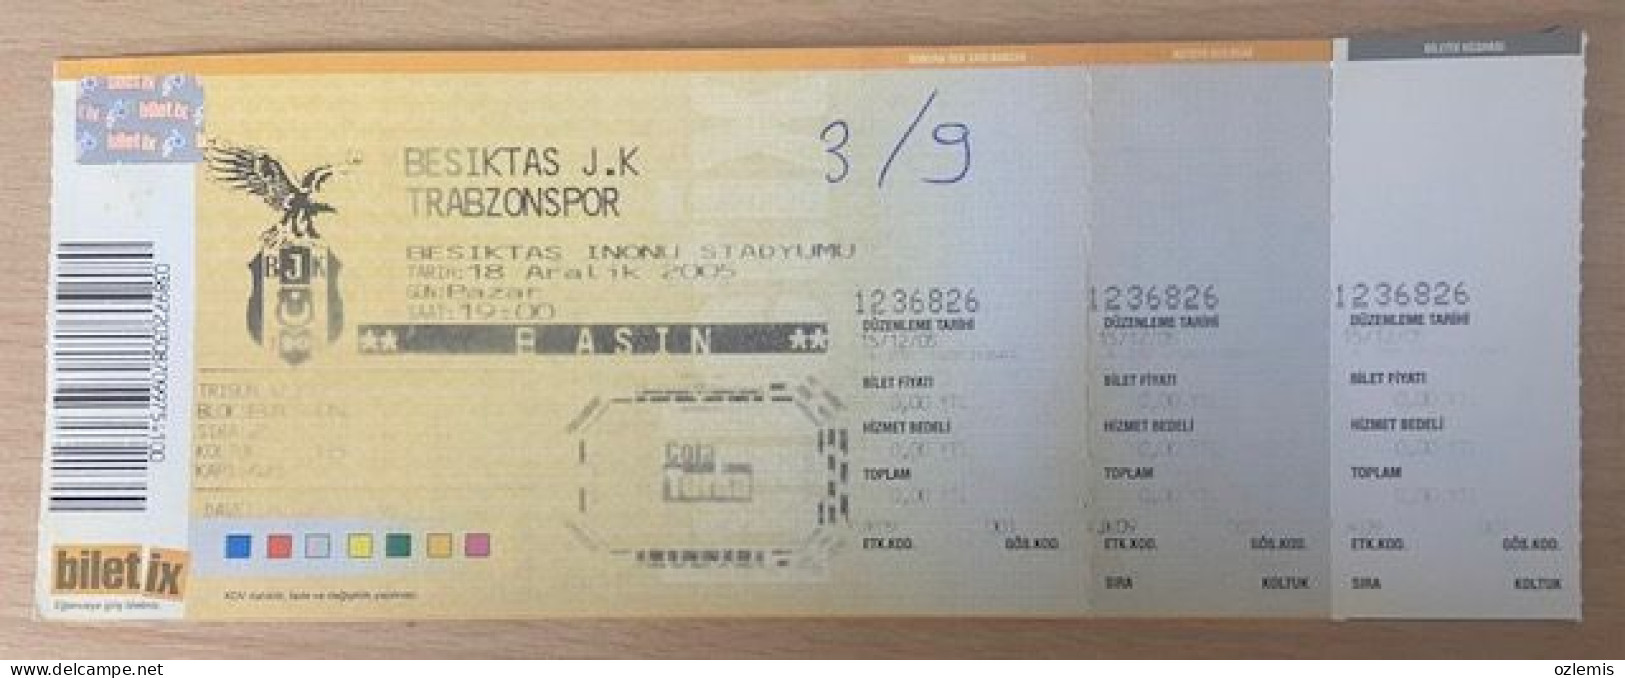 BESIKTAS - TRABZONSPOR ,MATCH TICKET ,2005 - Eintrittskarten